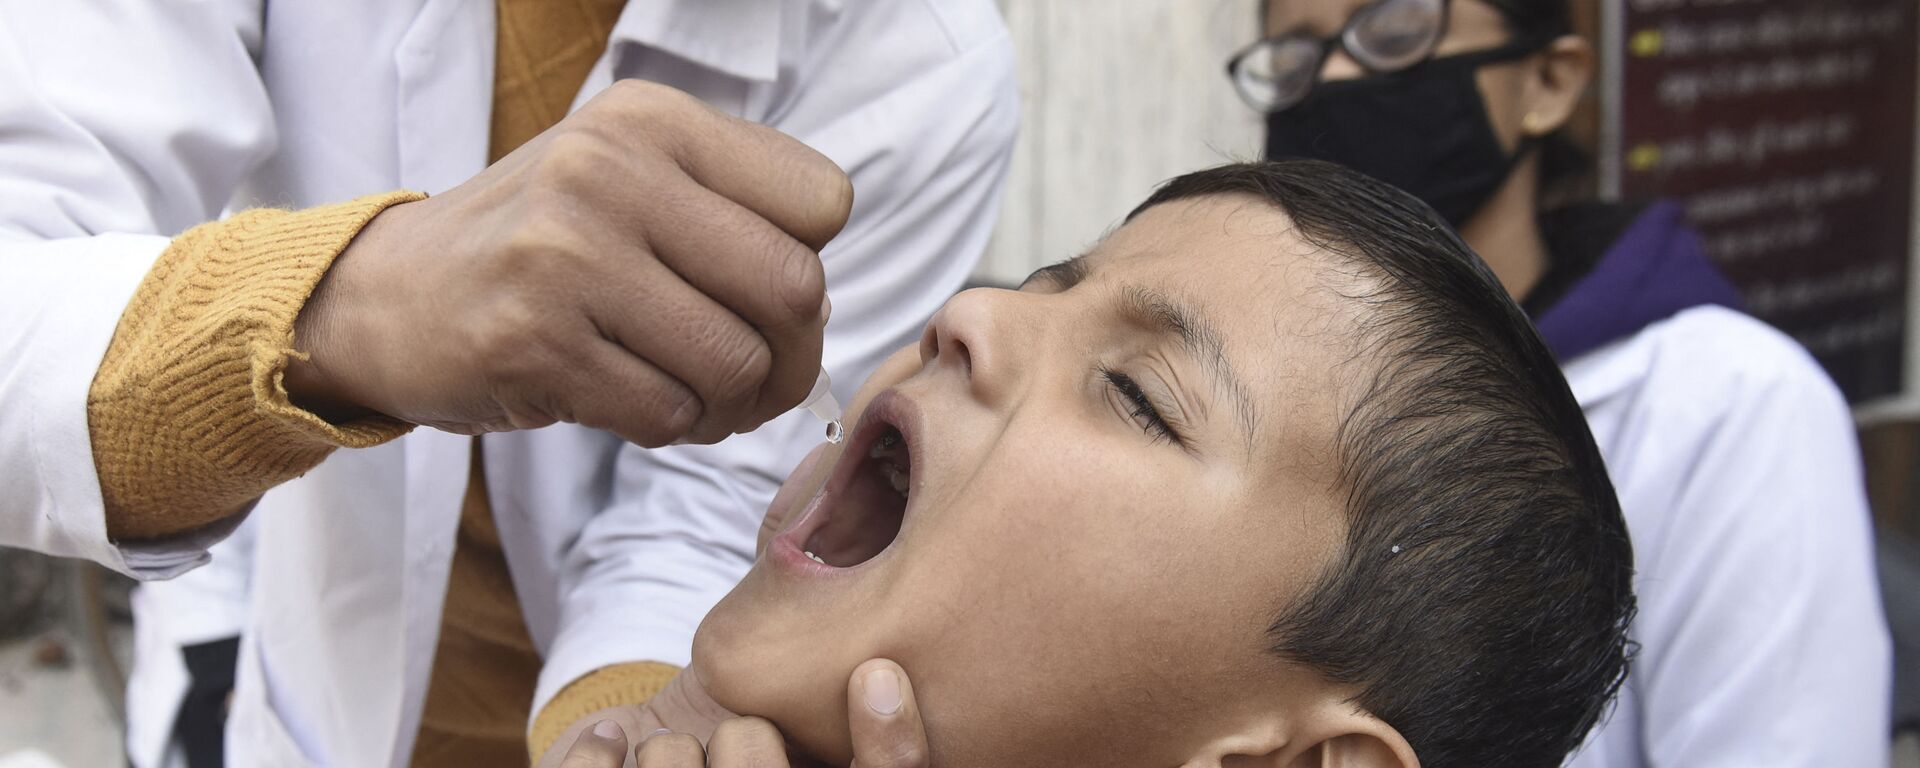 Медицинский работник вводит капли вакцины против полиомиелита ребенку - Sputnik Таджикистан, 1920, 24.03.2021